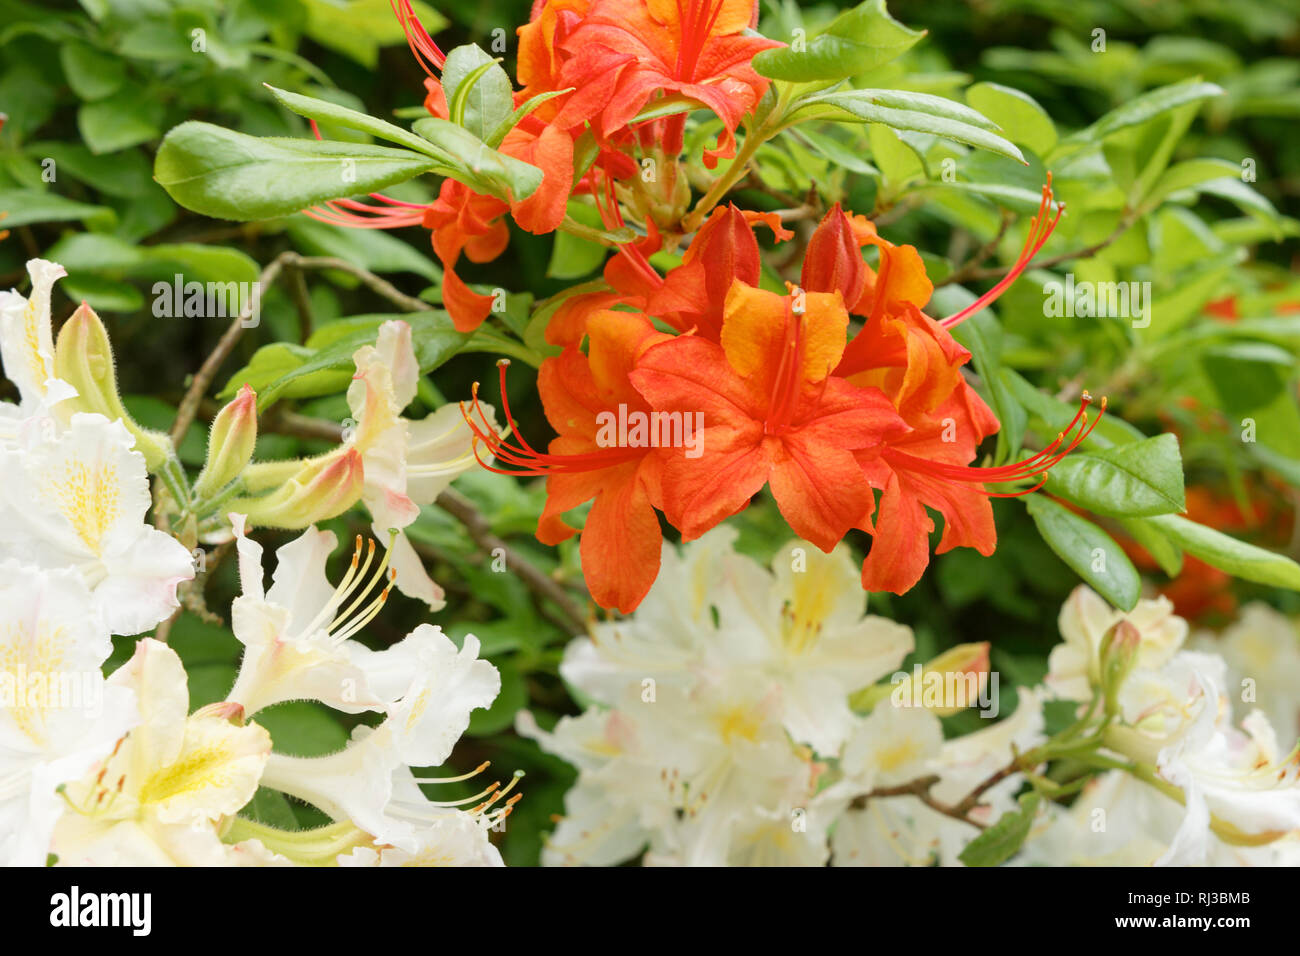 Flowering Orange and White Azalea Bush Stock Photo